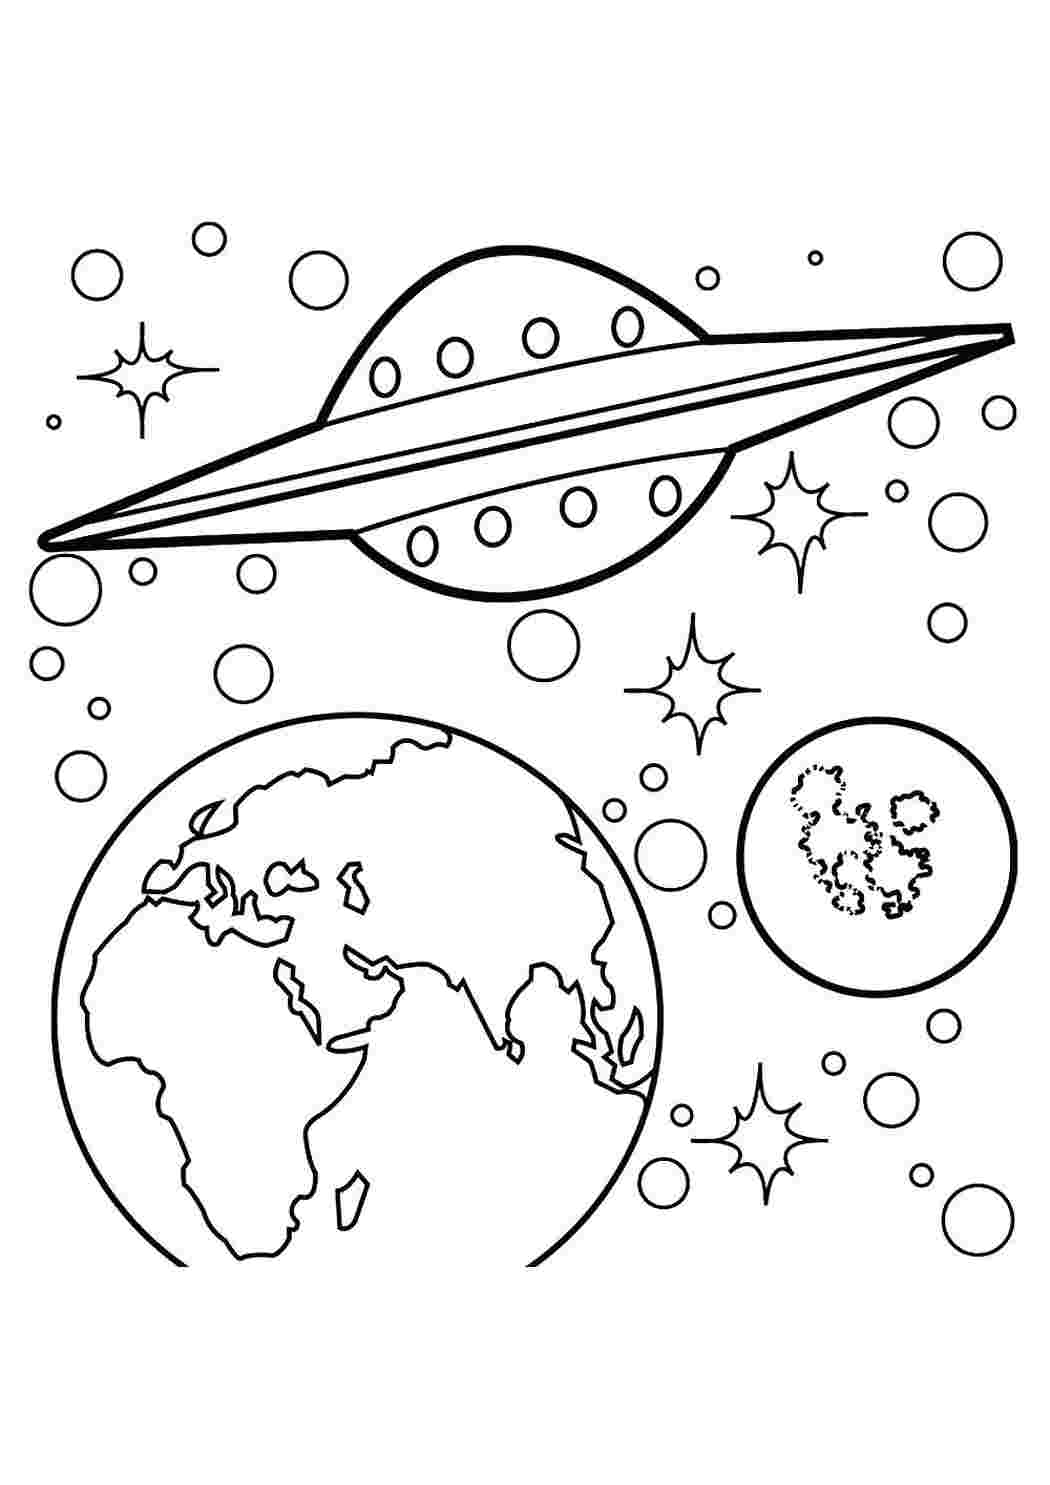 Раскраска планеты для детей 5 6 лет. Космос раскраска для детей. Раскраска. В космосе. Раскраска космос и планеты для детей. Раскраски ко Дню космонавтики.